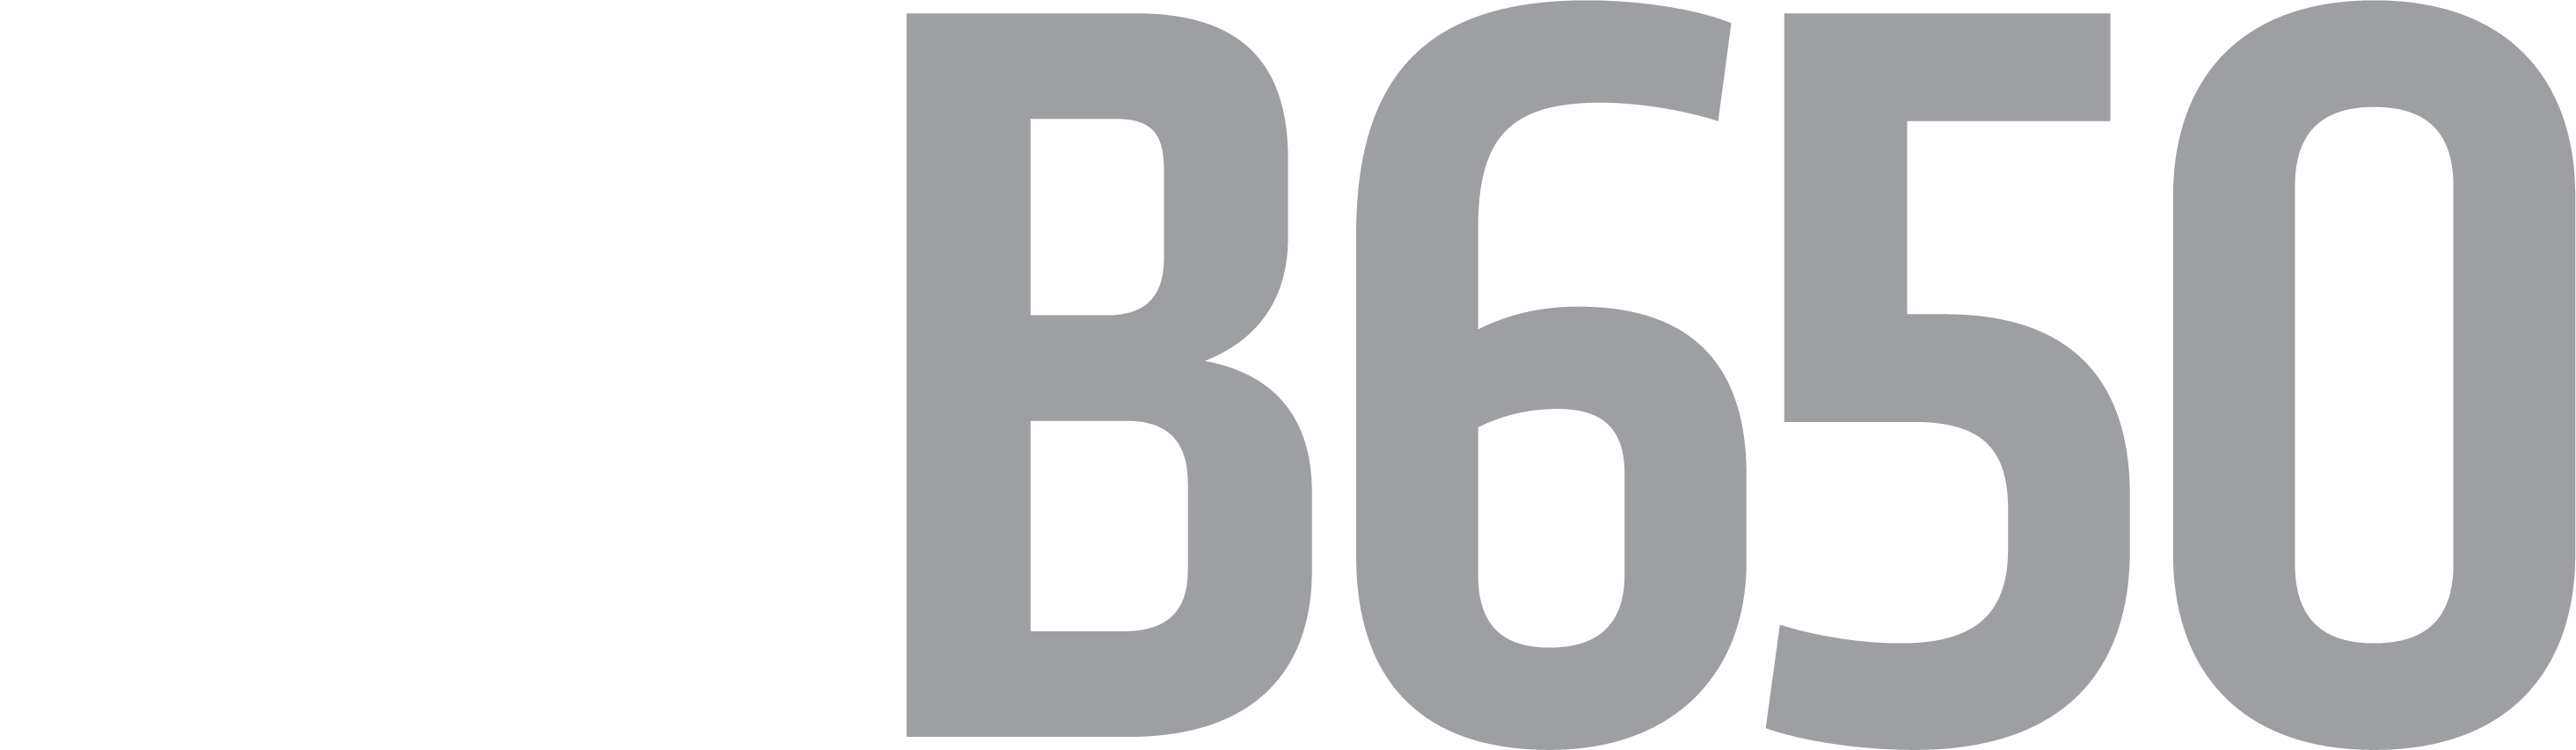 logotipo de AMD B650